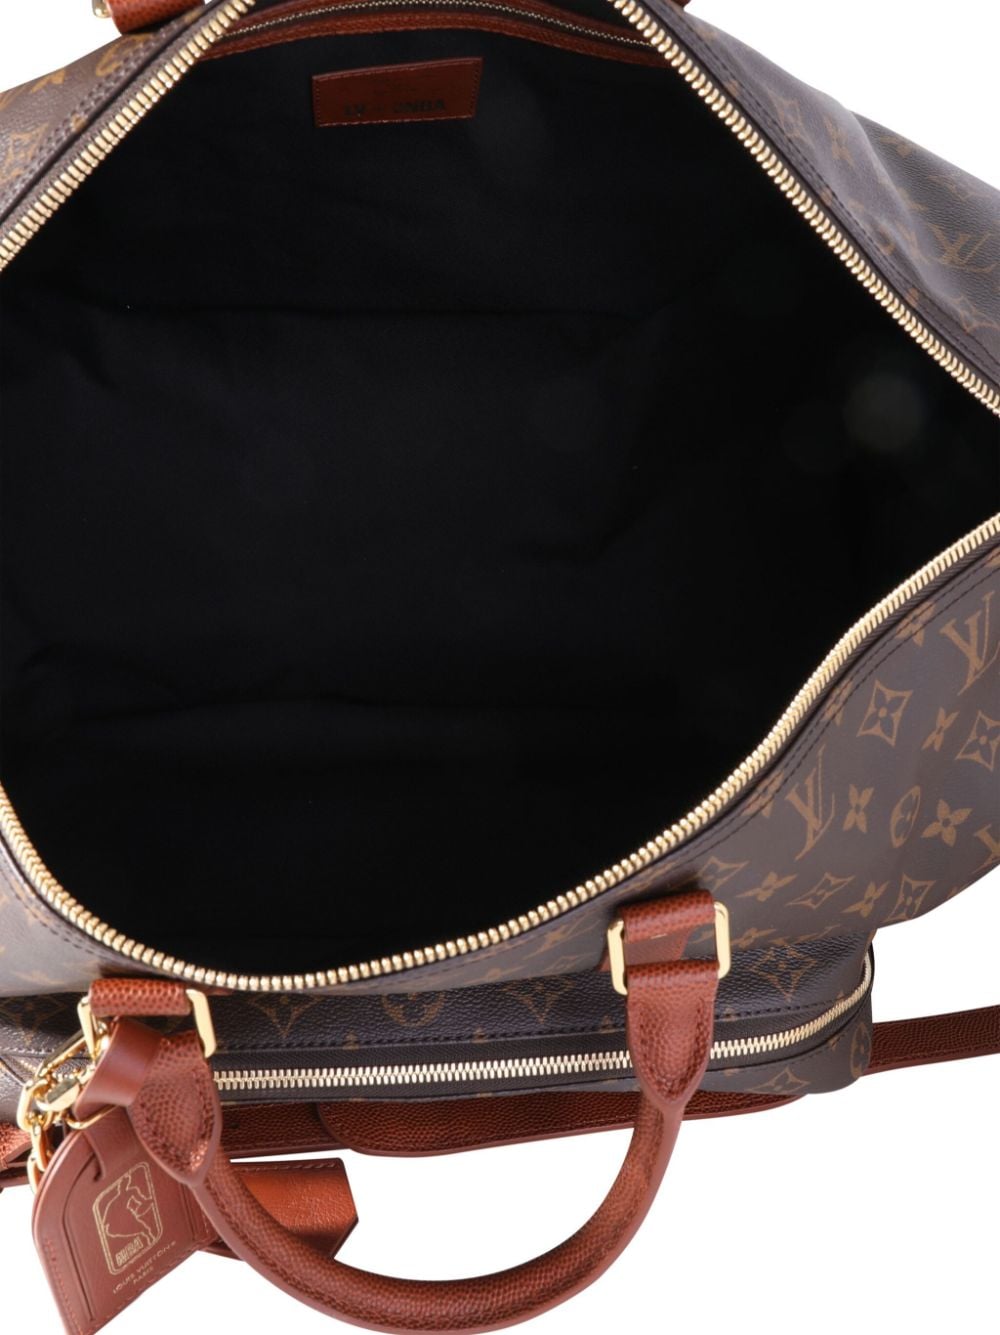 Louis Vuitton LVxNBA Keepall Trio Pocket Leather Bag Monogram